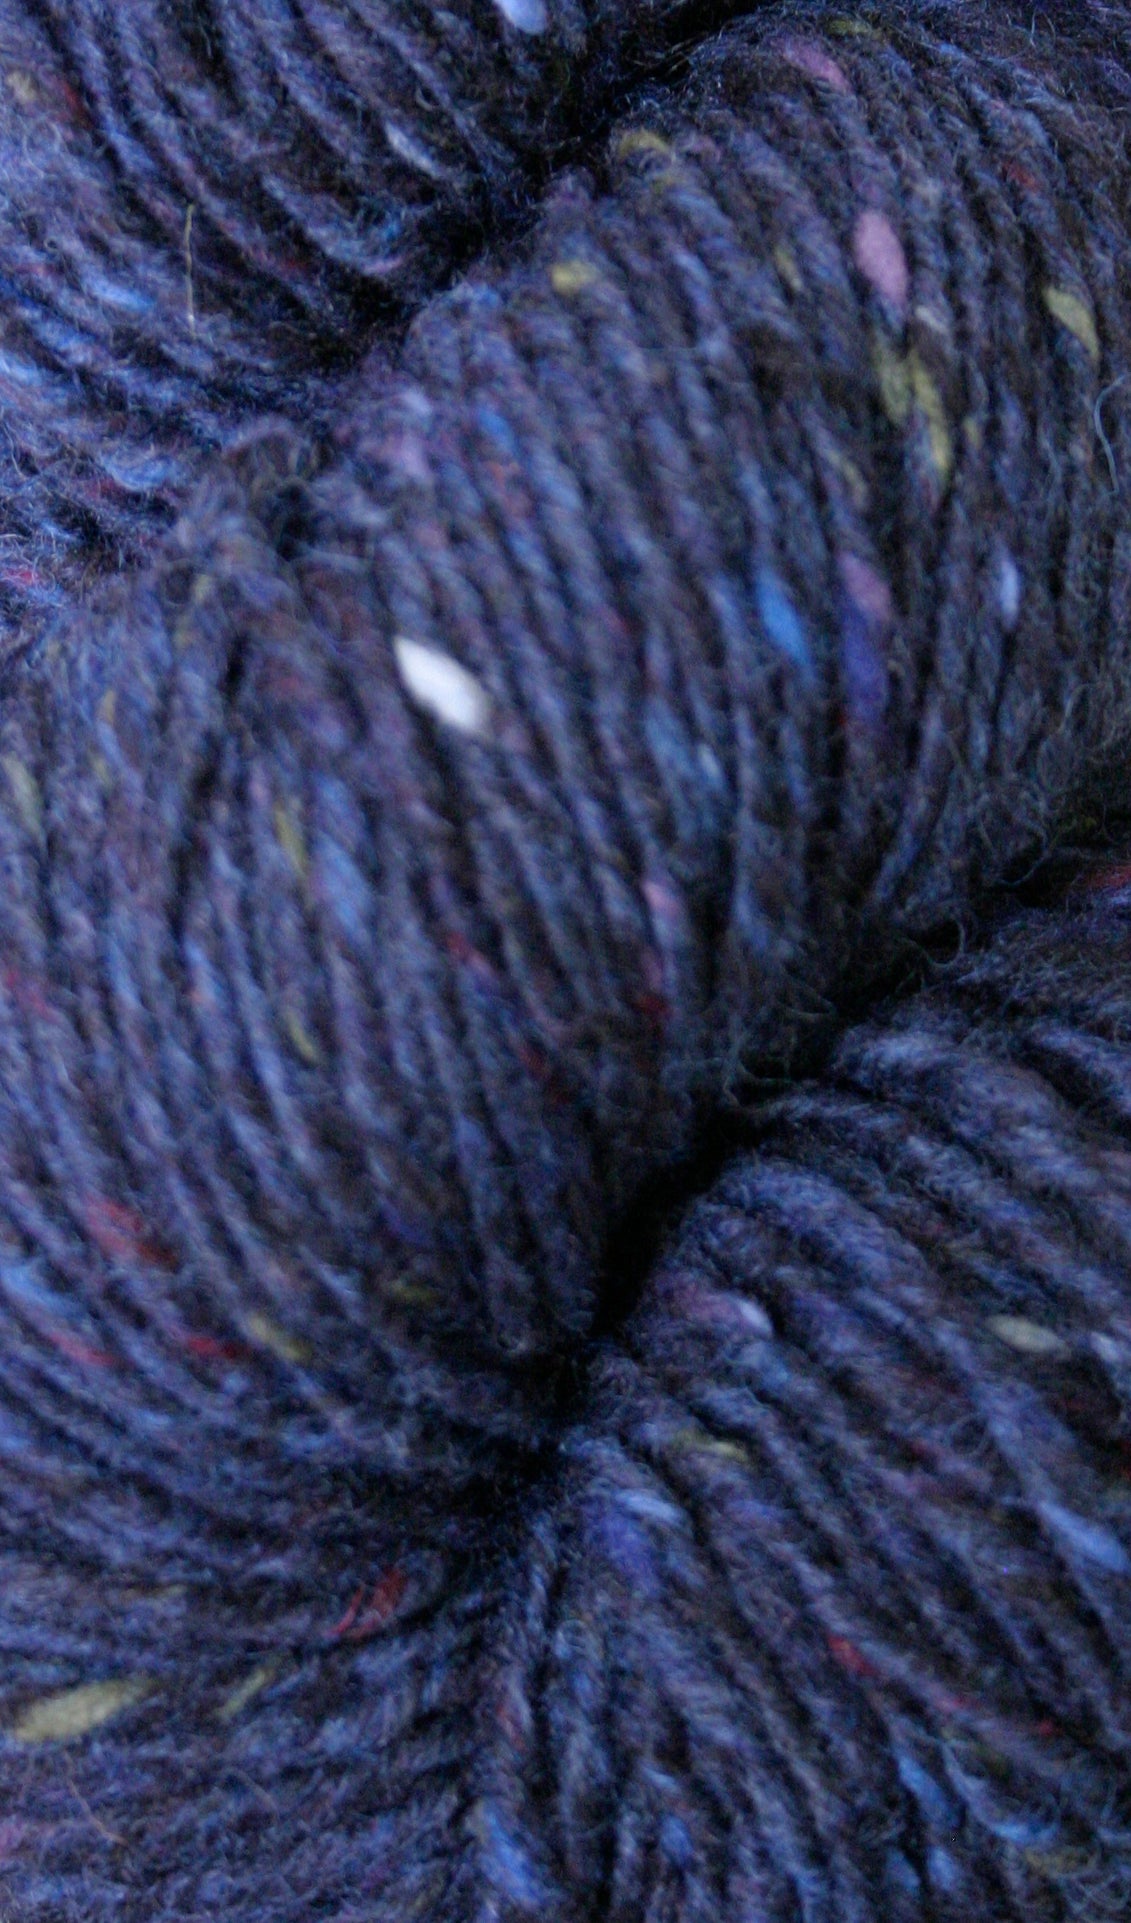 Buy Irish knitting wool